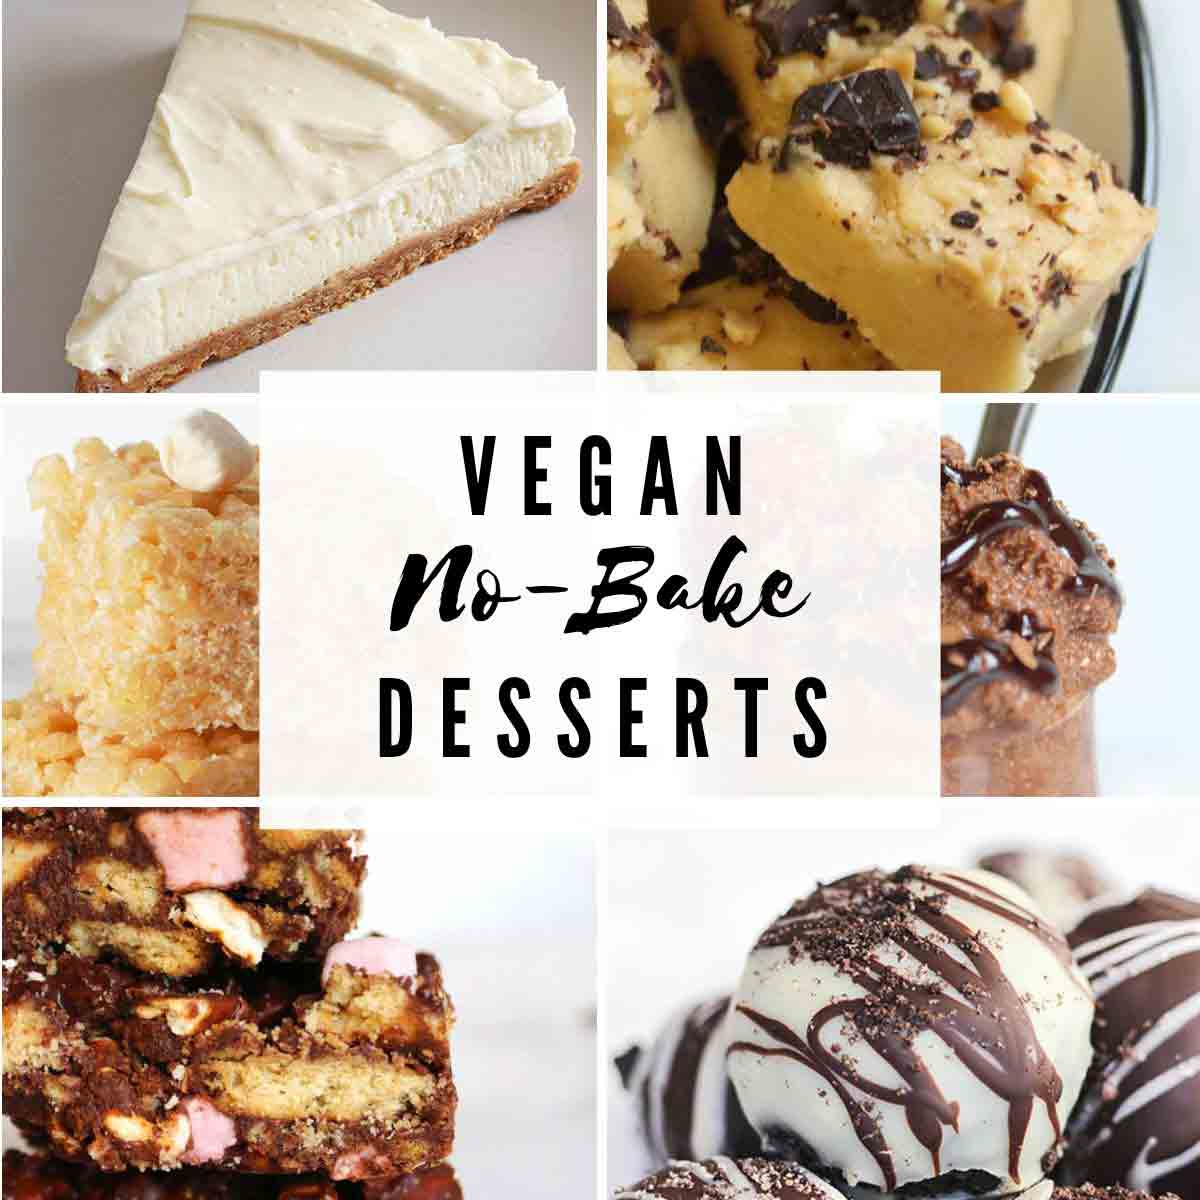 Vegan No Bake Desserts Image Collage